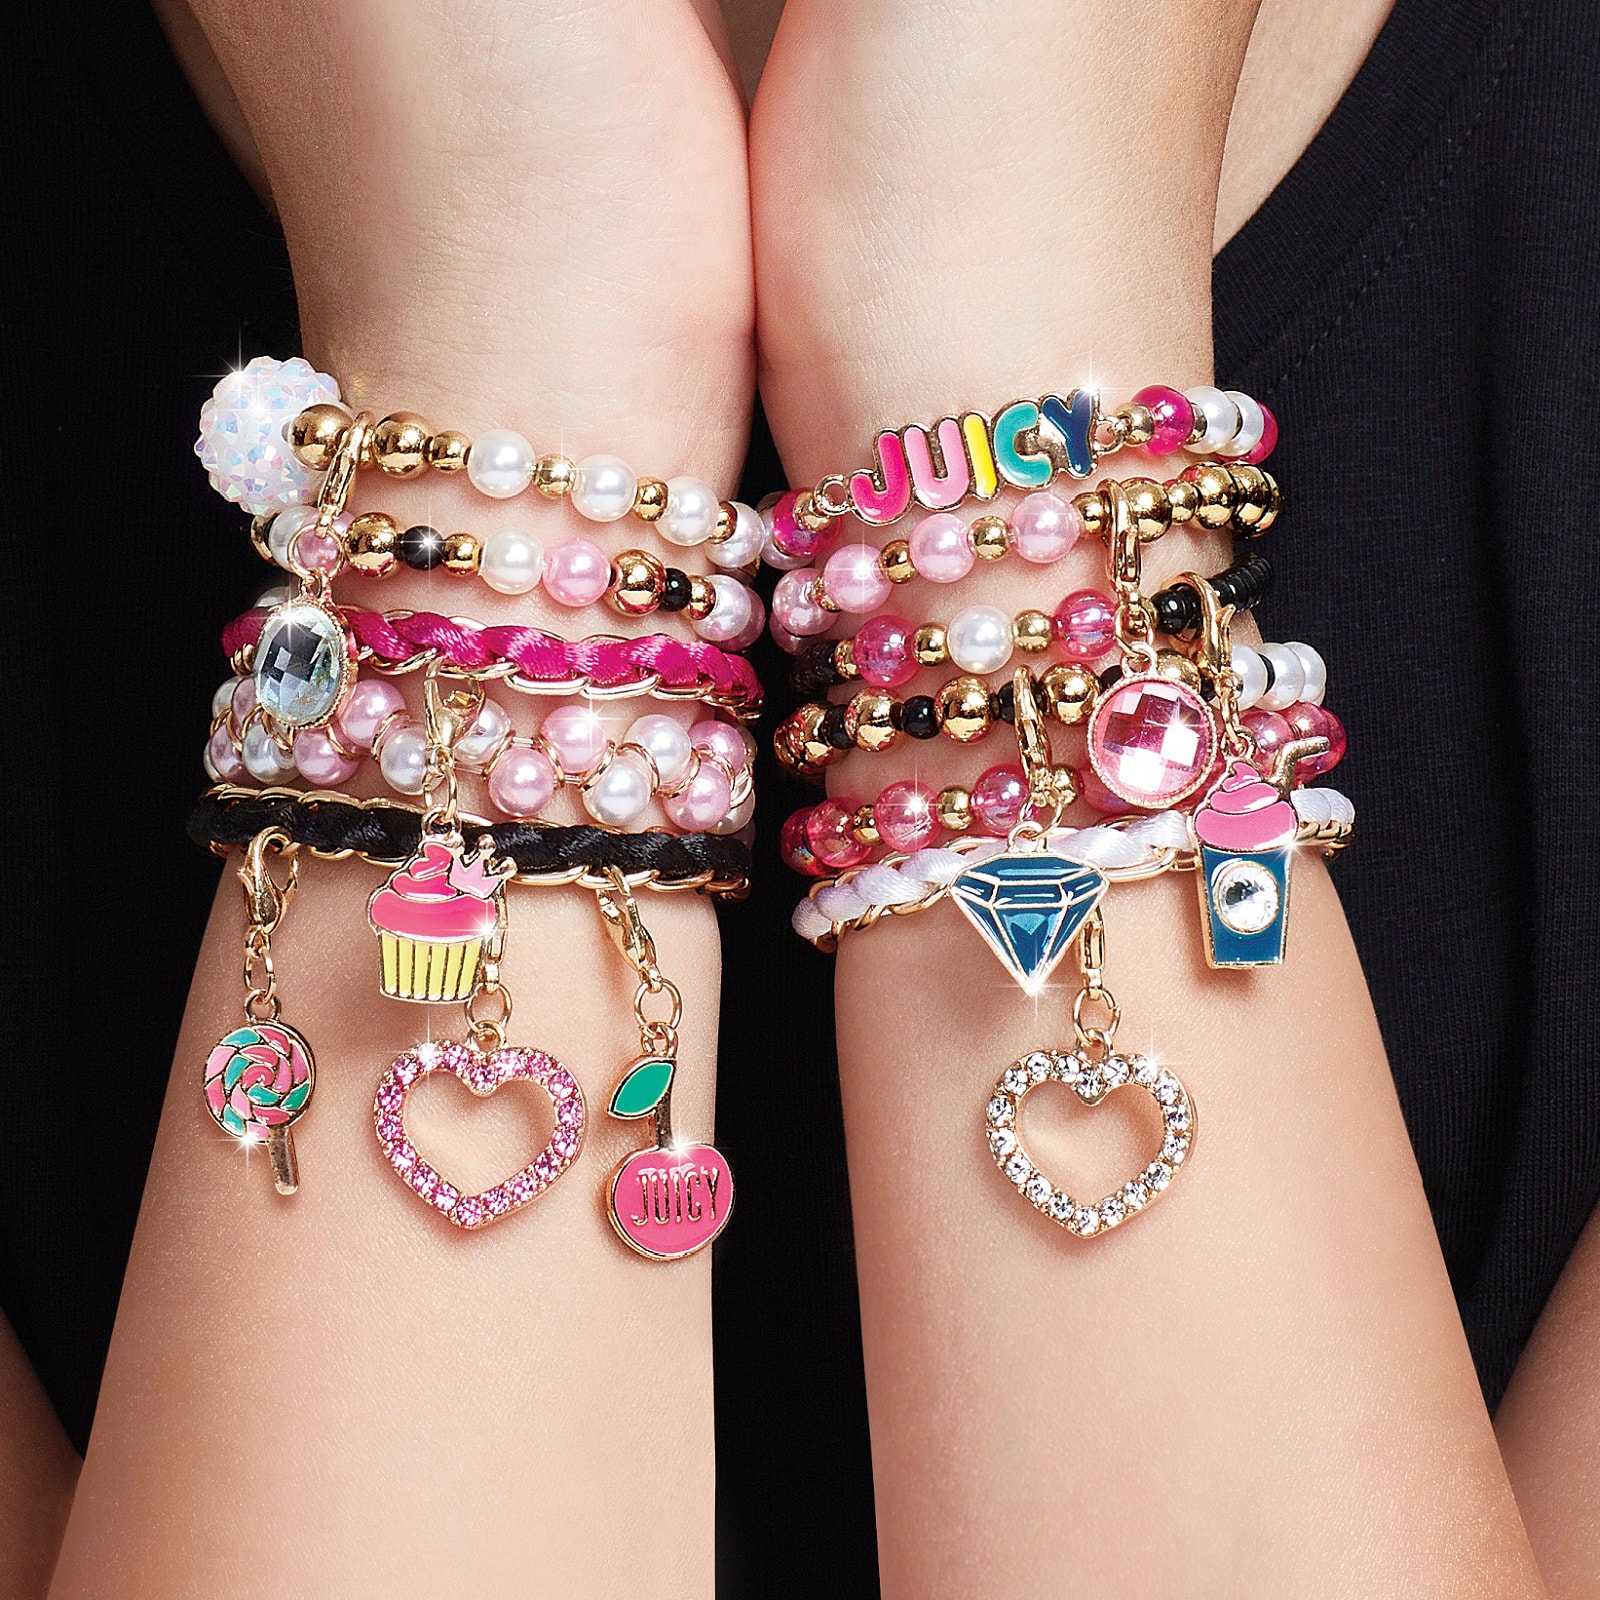 Bracelet enfant, bracelet perles en acrylique, bracelet élastique, Bracelet  pearls, colored jewel, elastic bracelet